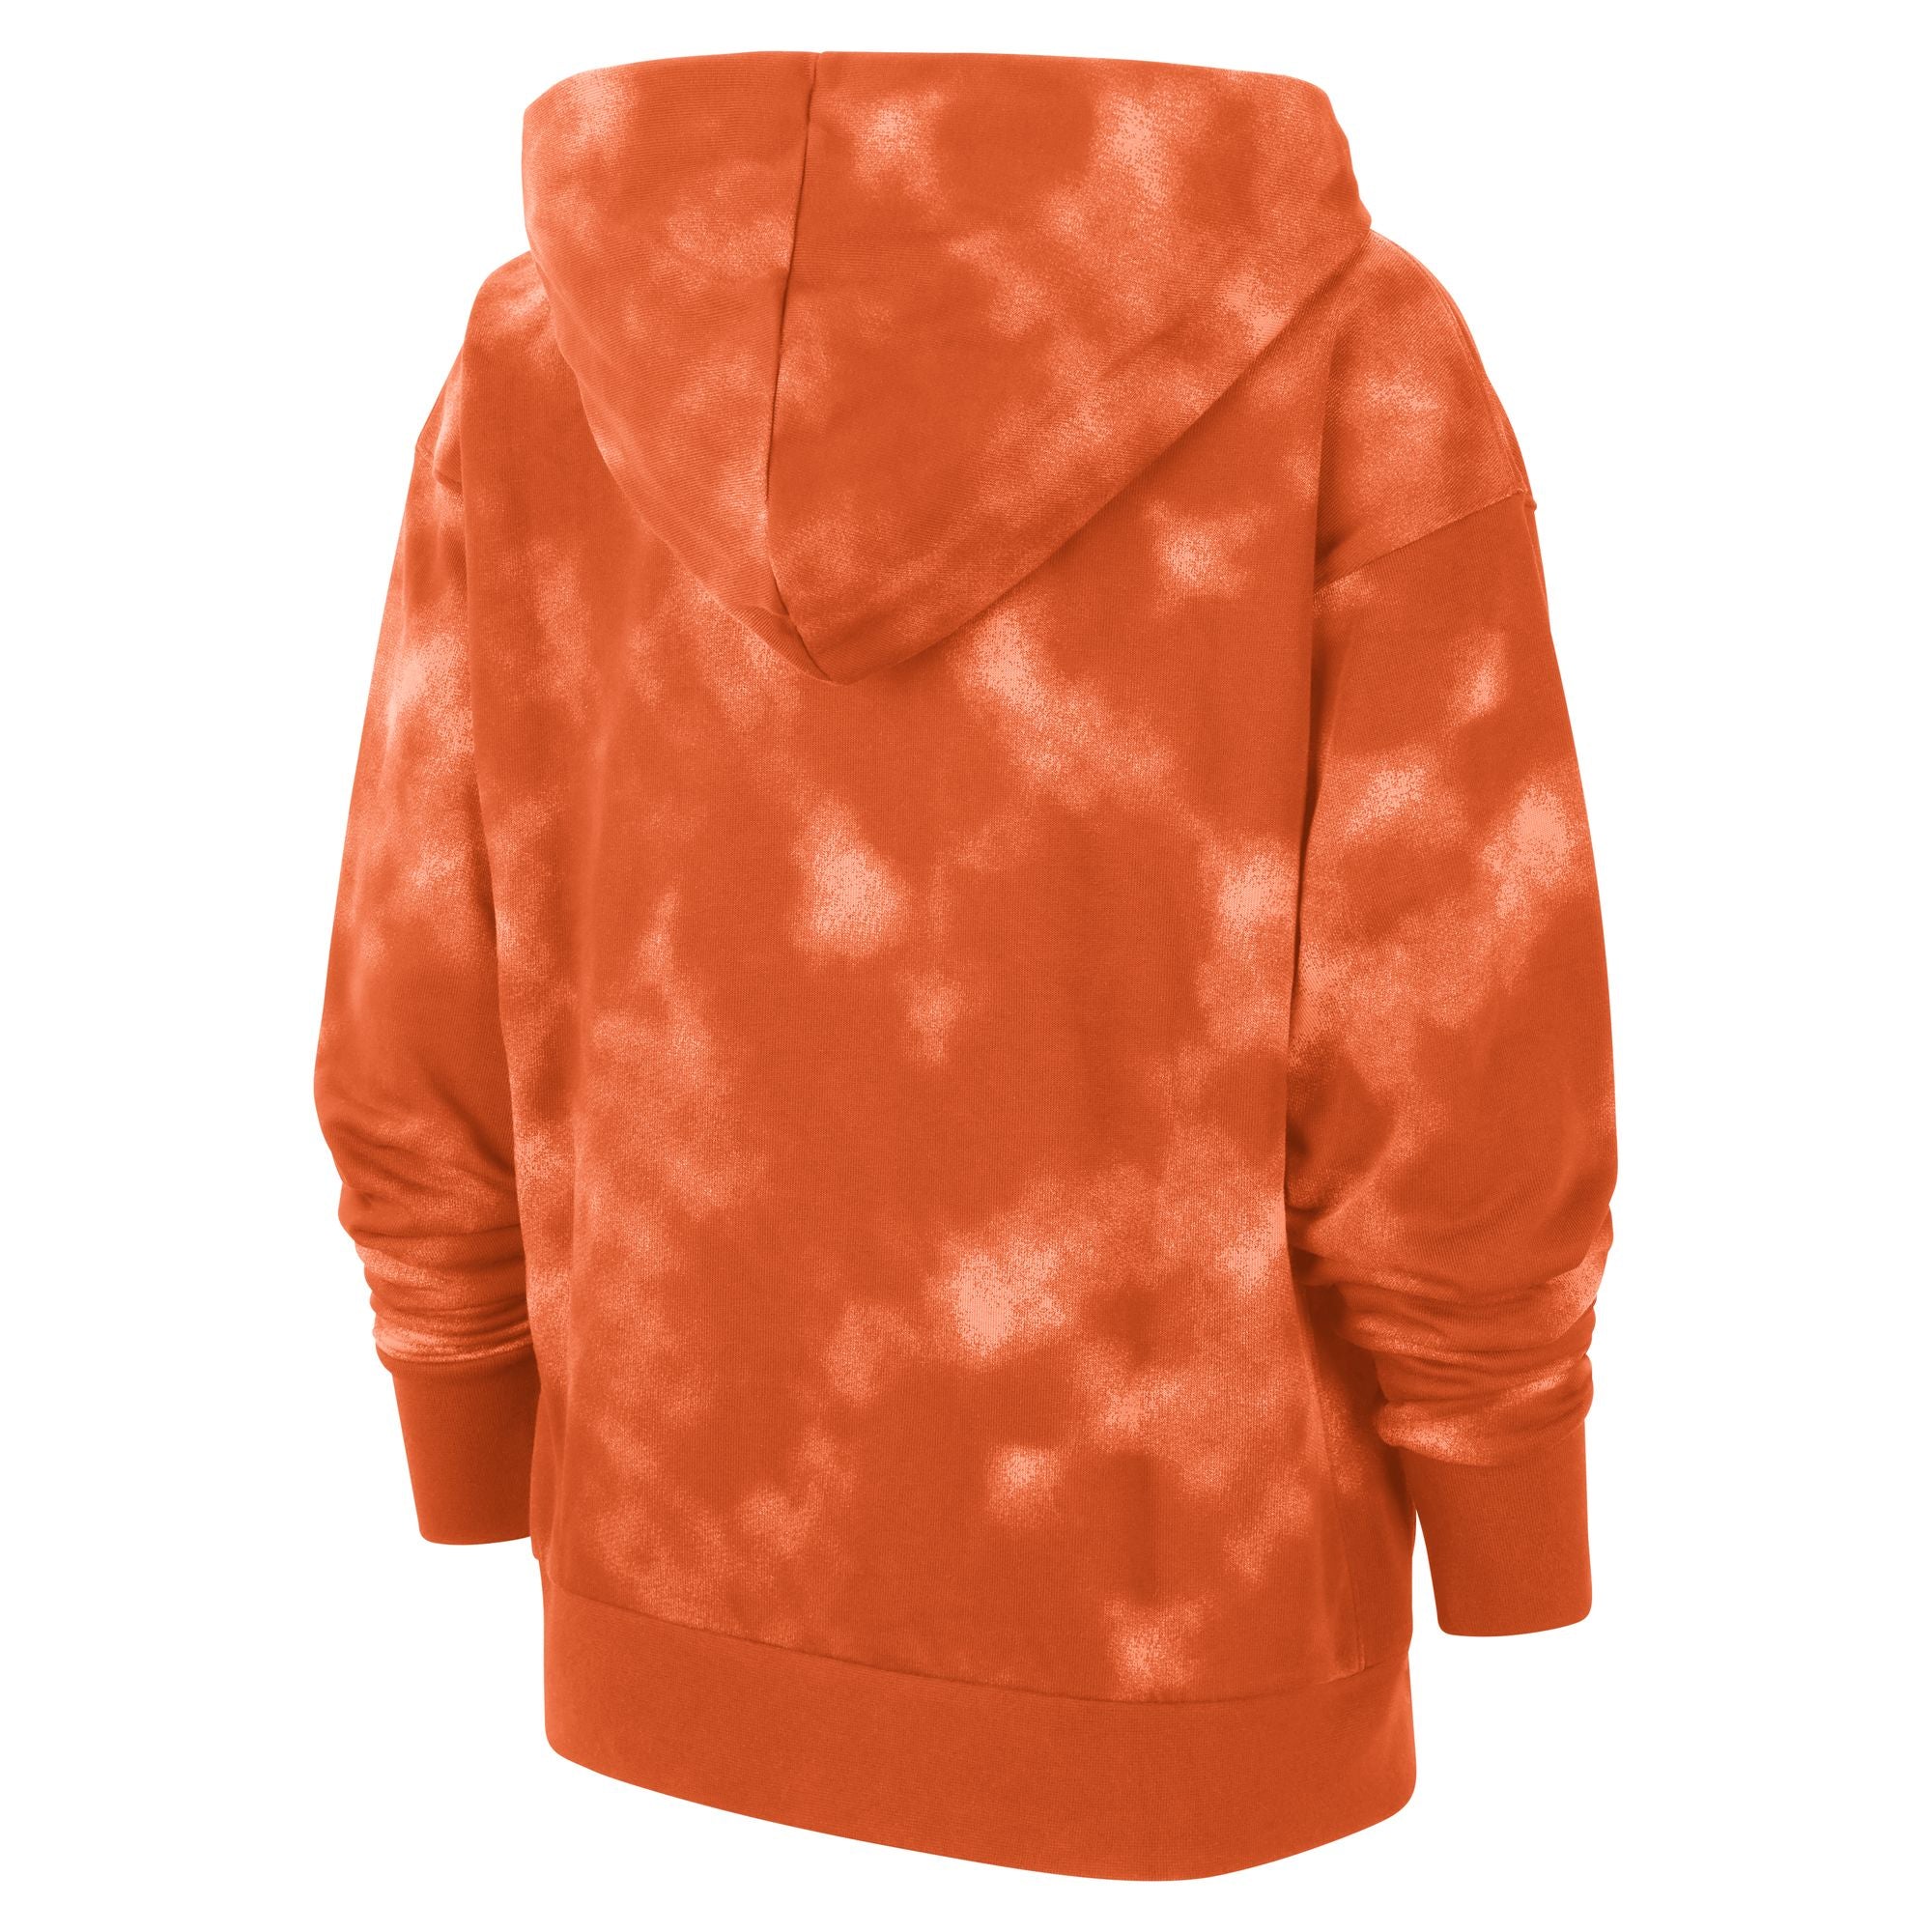 Standard Issue Pullover (Orange)